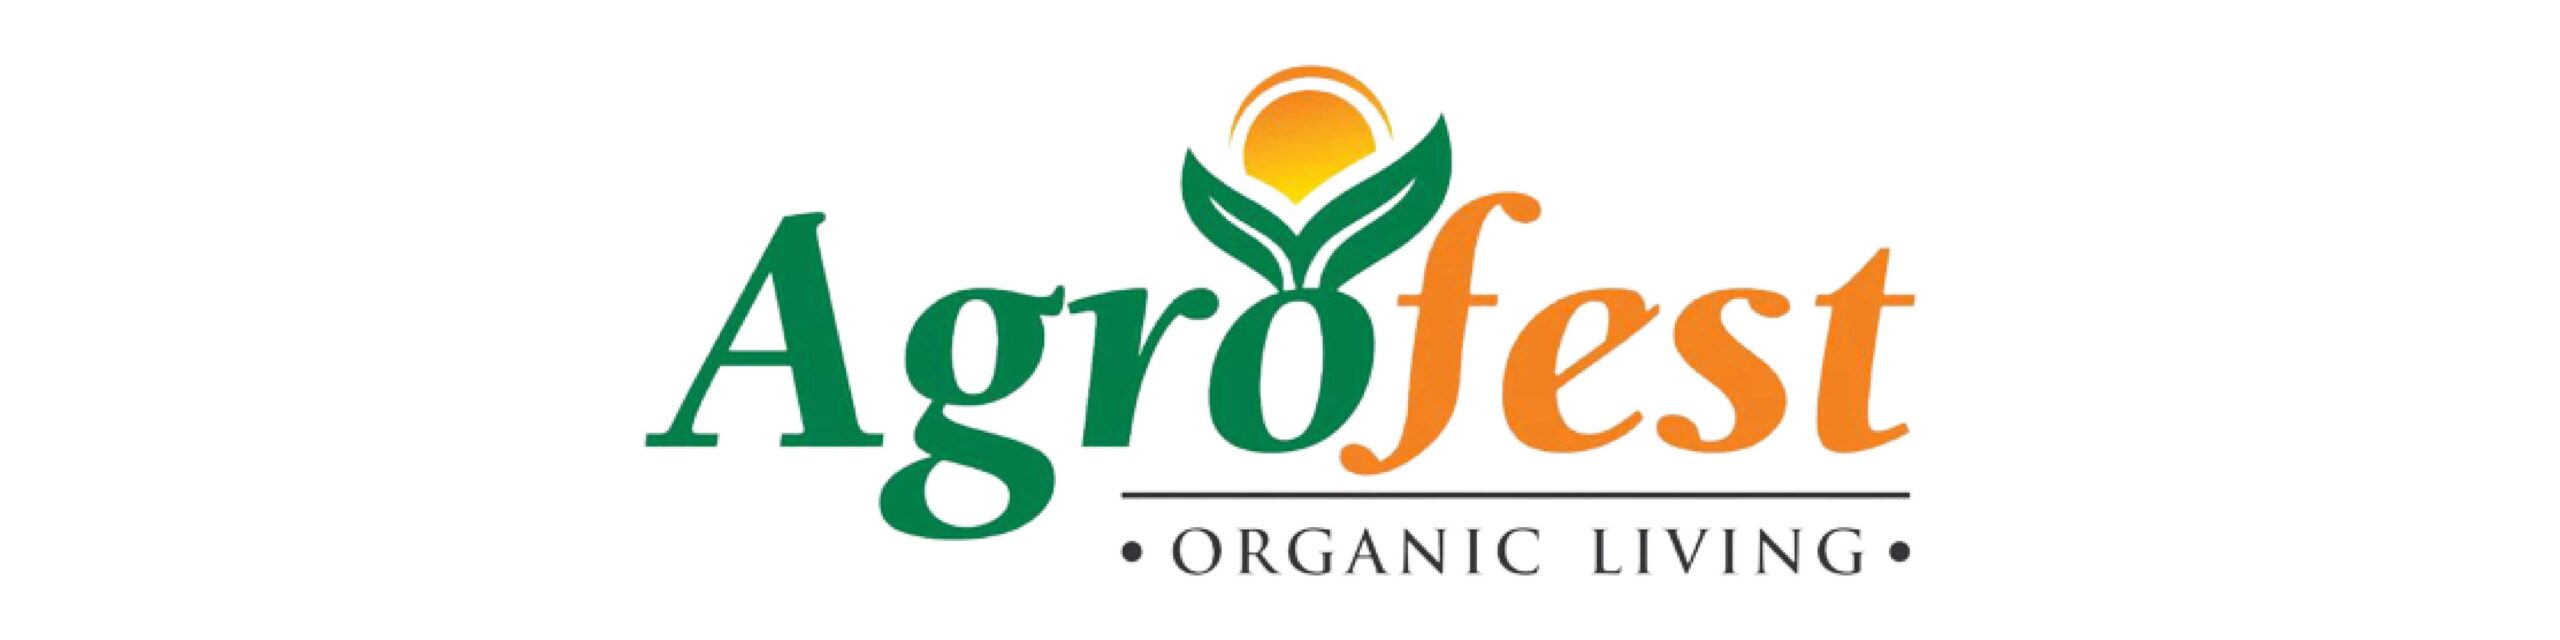 Agrofest-logo